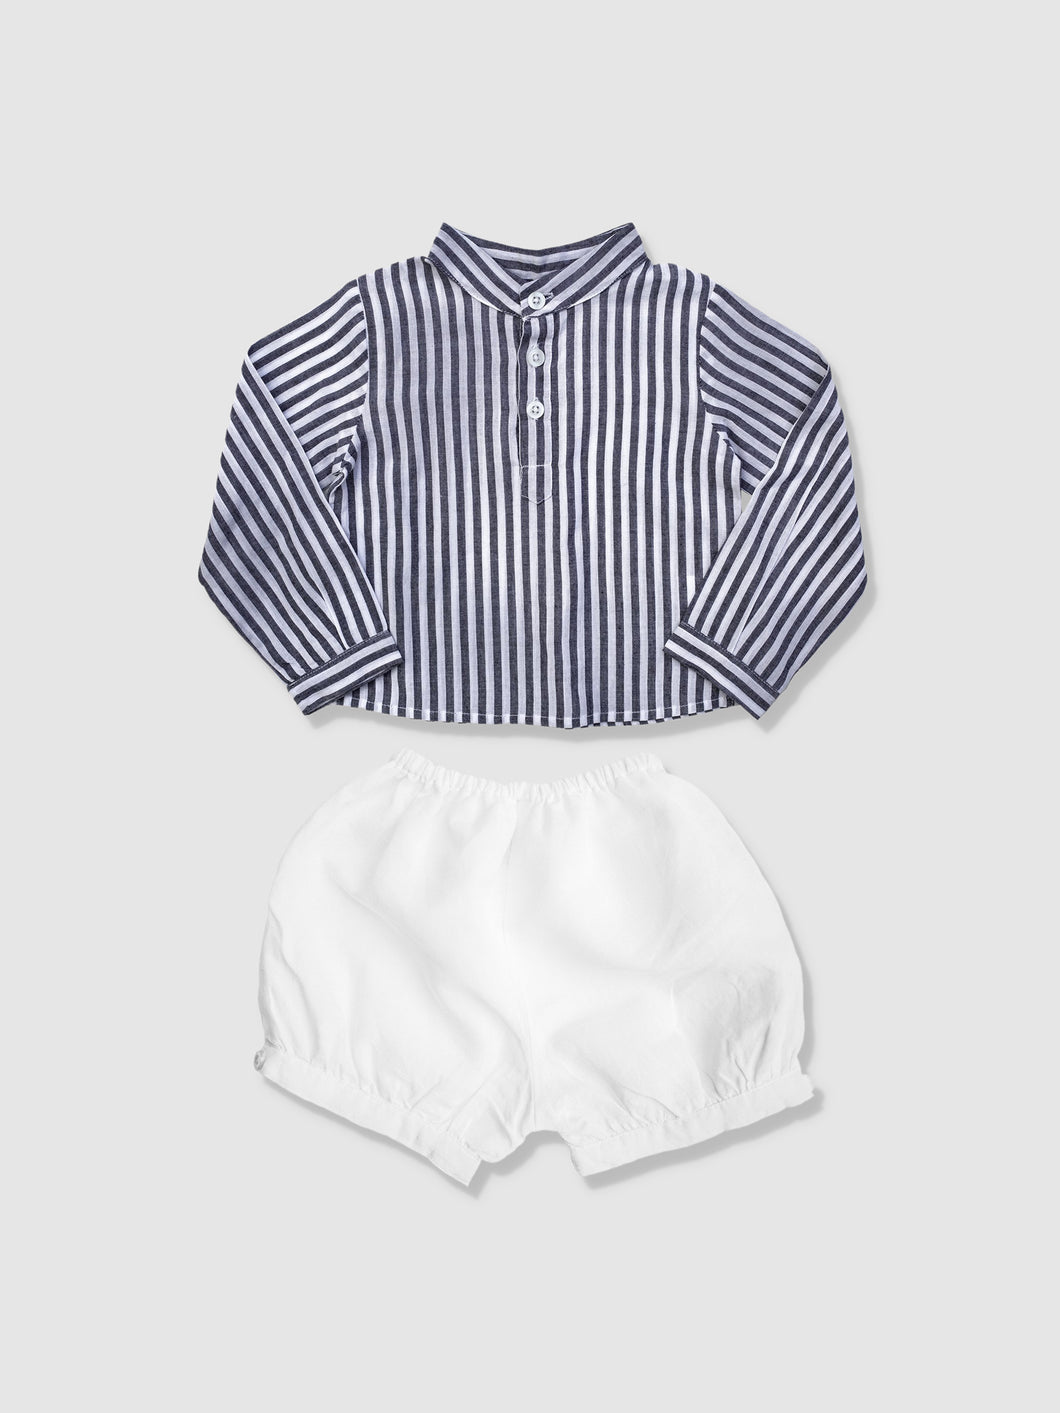 Boys Harbor Island Shirt and White Linen Short Gift Set